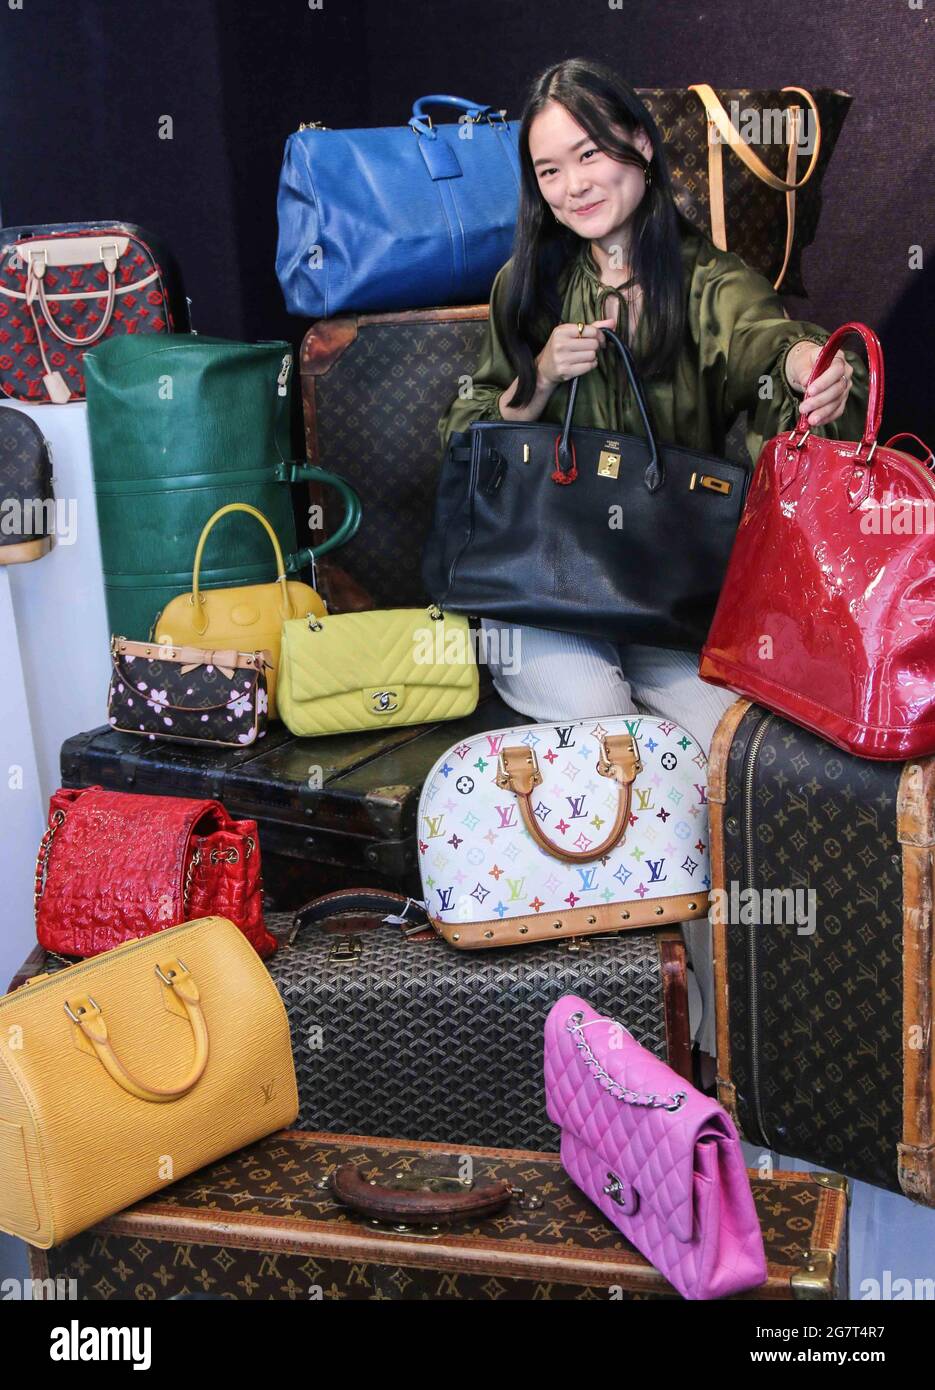 7 designer handbags to get during Nordstrom's epic Black Friday sale